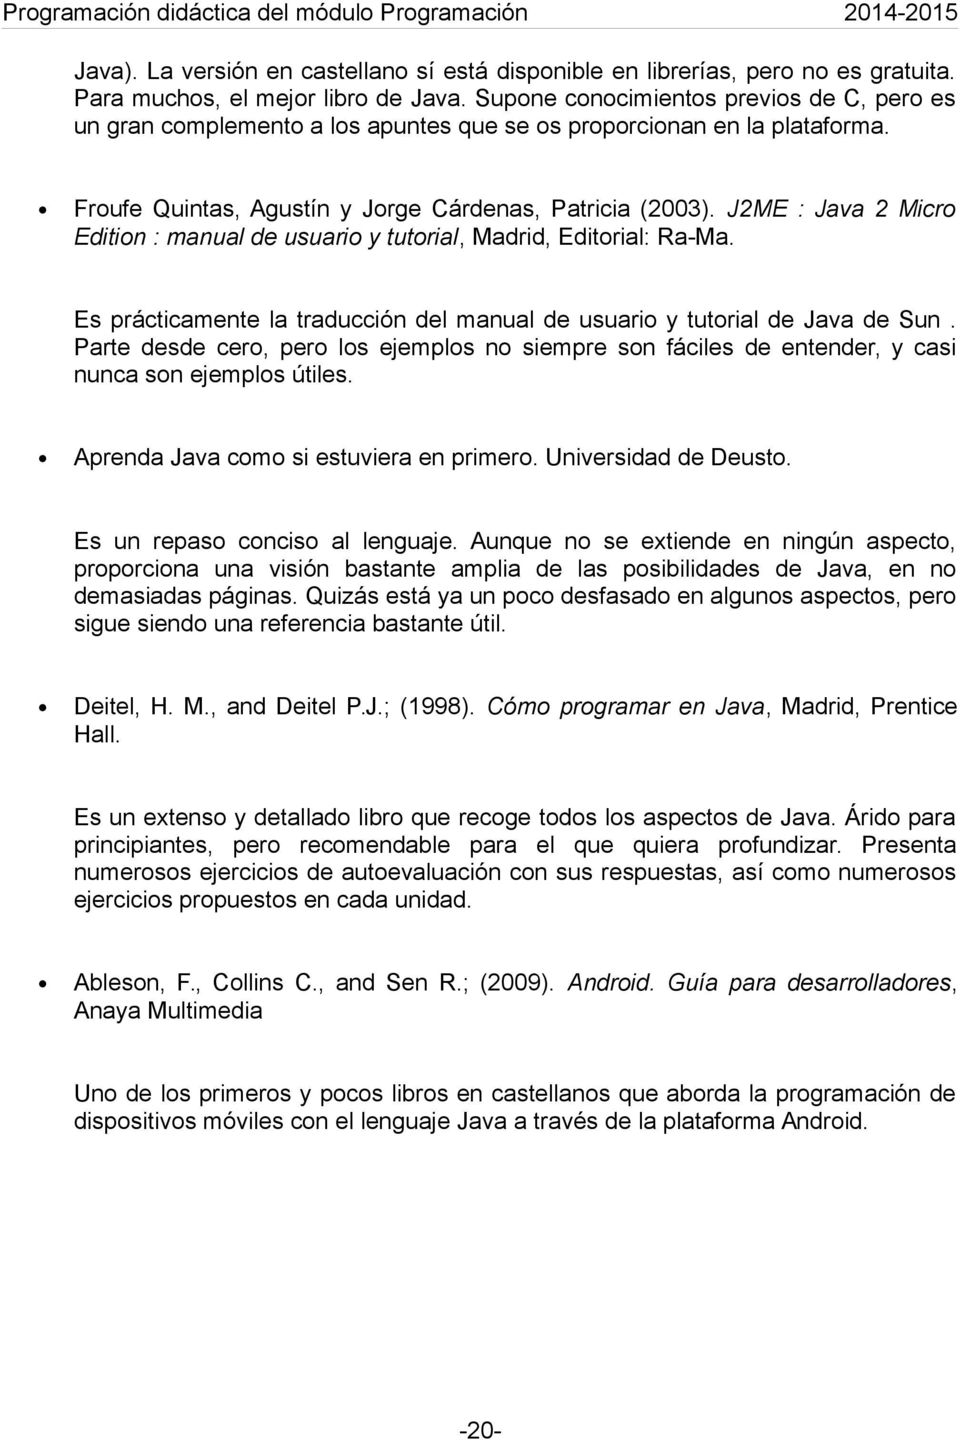 J2ME : Java 2 Micro Edition : manual de usuario y tutorial, Madrid, Editorial: Ra-Ma. Es prácticamente la traducción del manual de usuario y tutorial de Java de Sun.